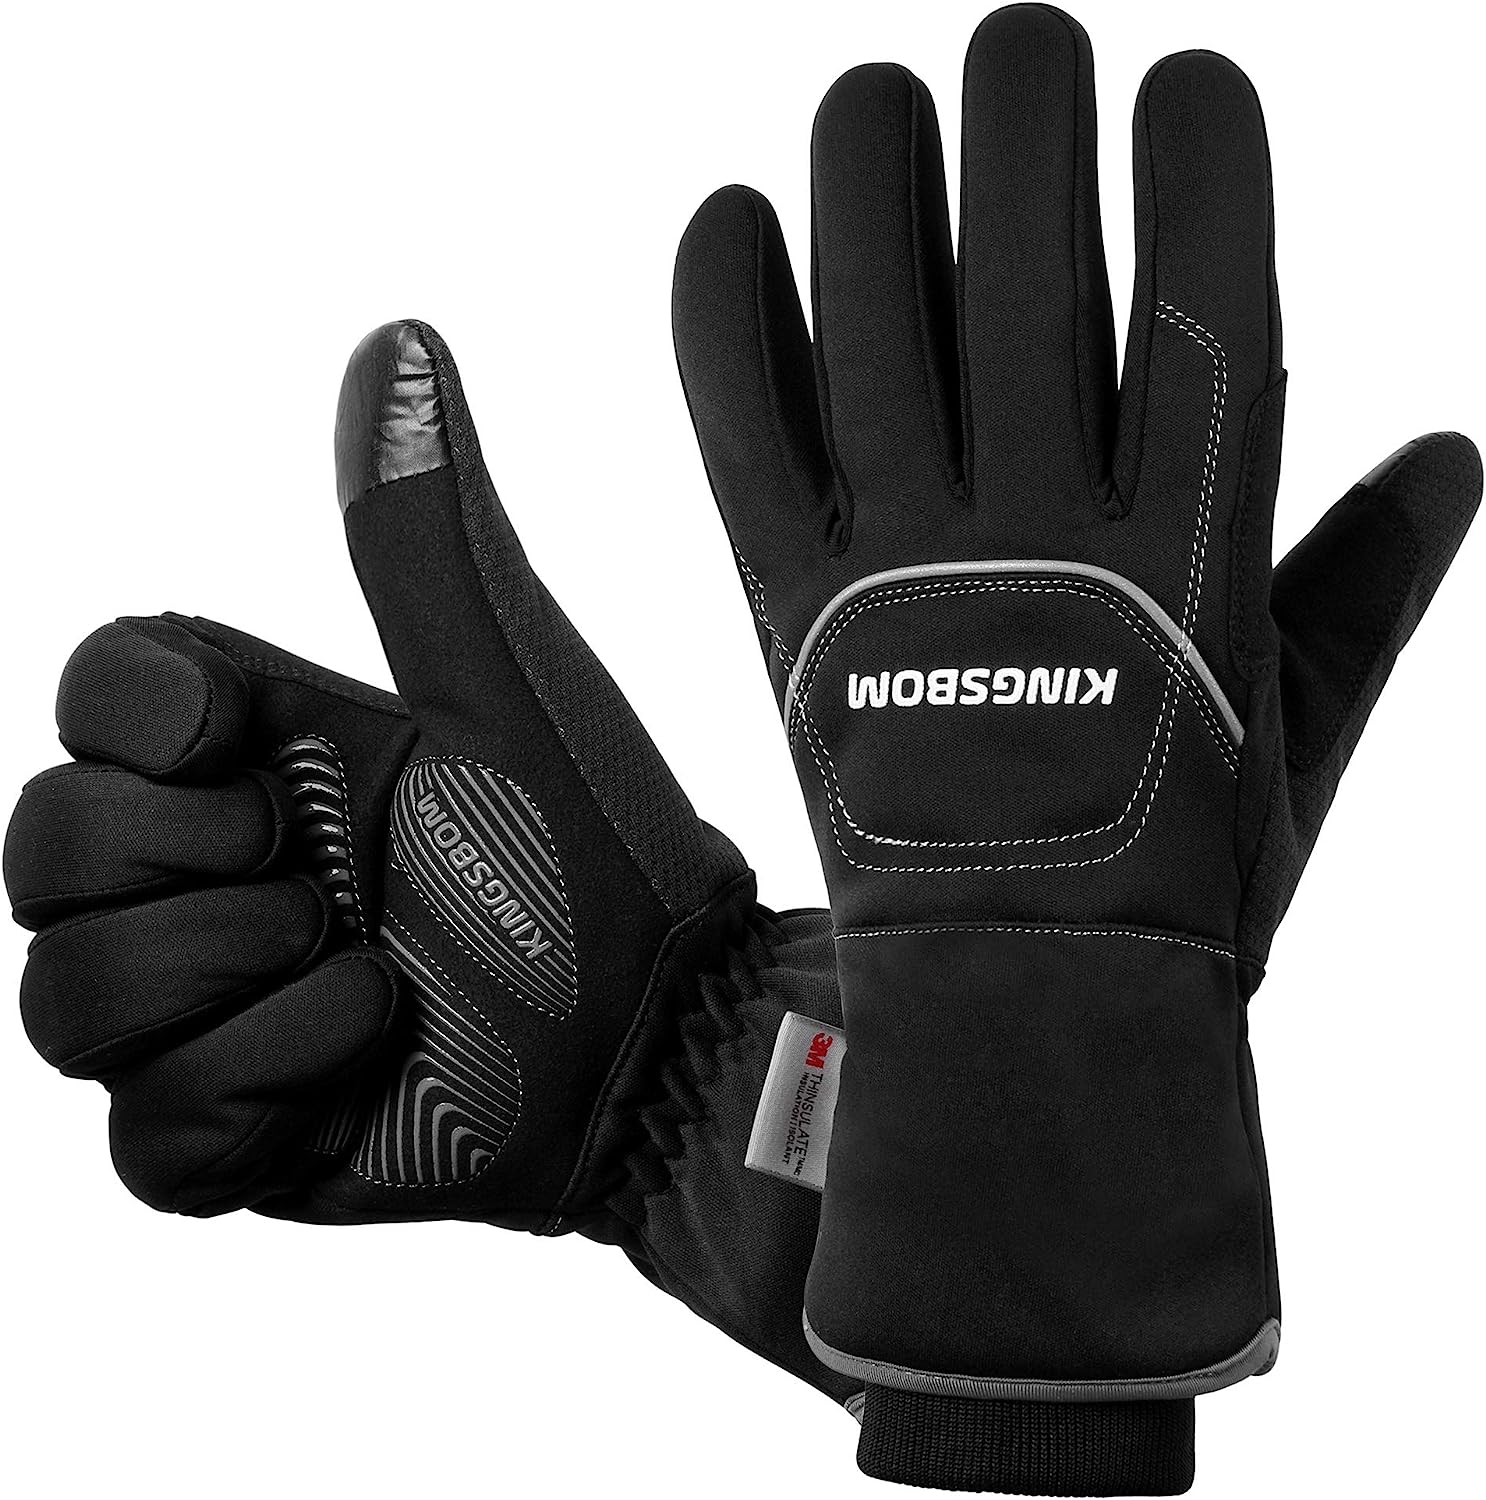 KINGSBOM -40F° Waterproof & Windproof Thermal Gloves - [...]